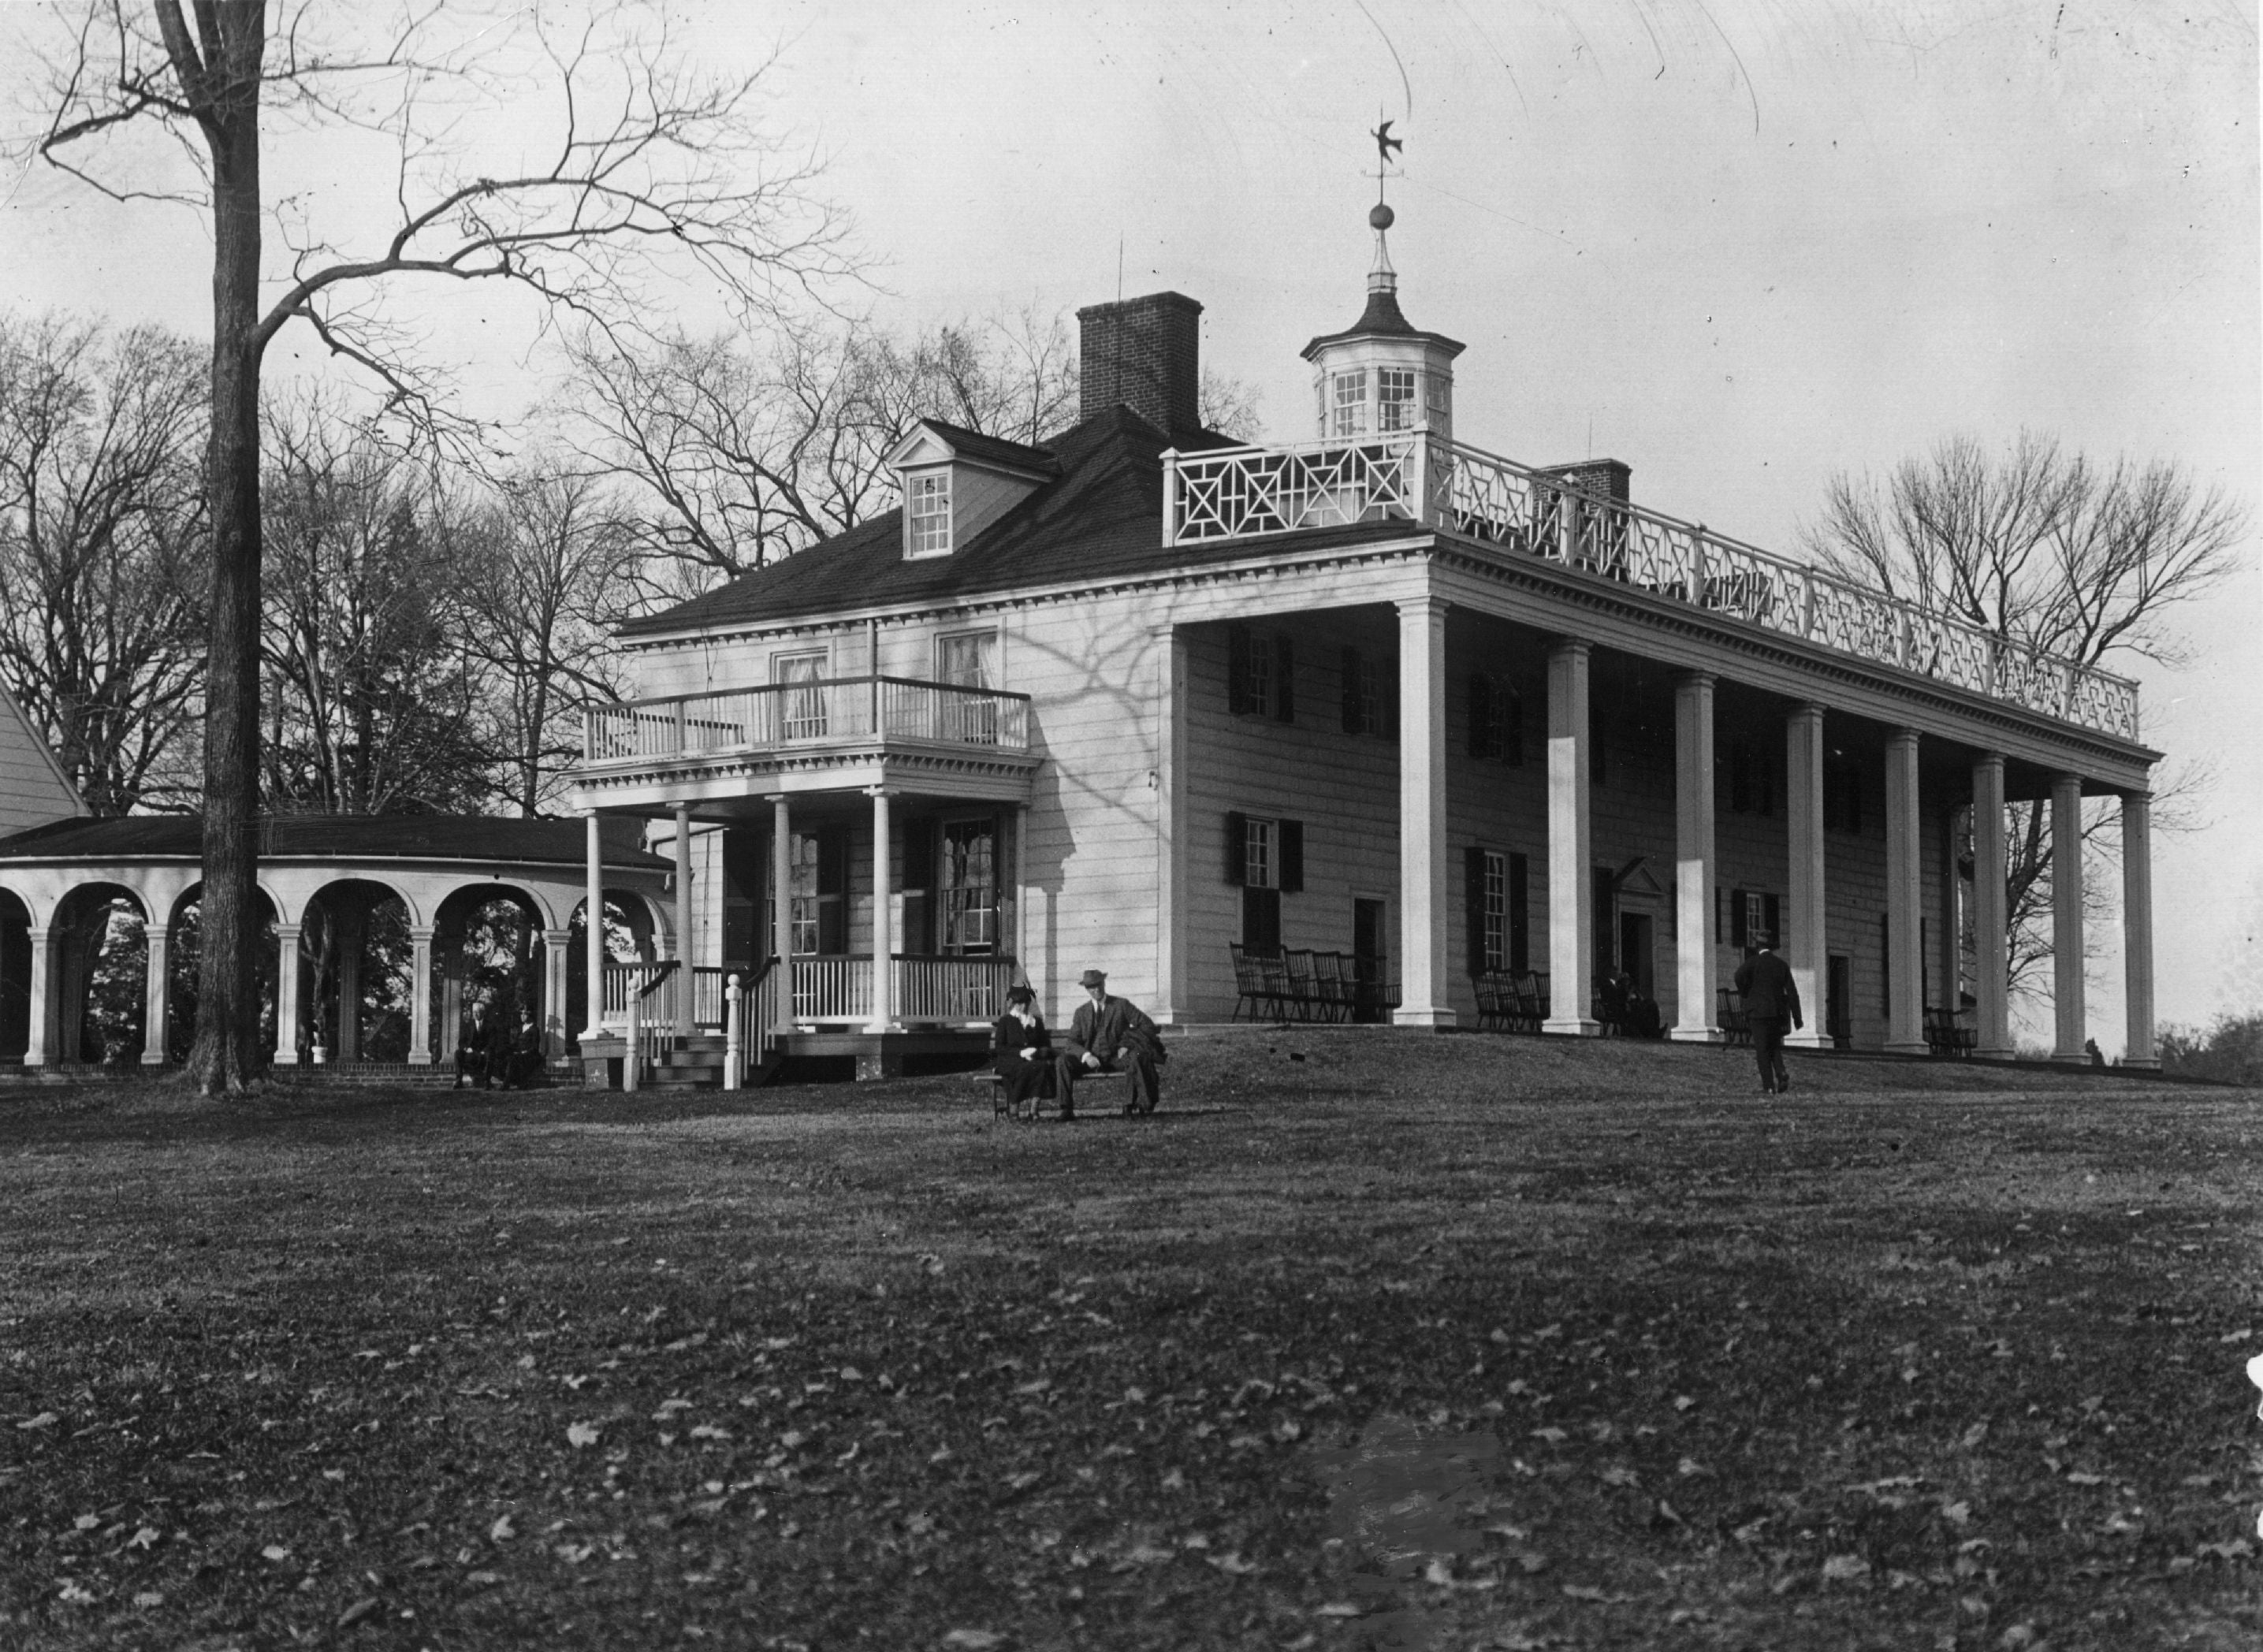 George Washington often celebrated Christmas at Mount Vernon